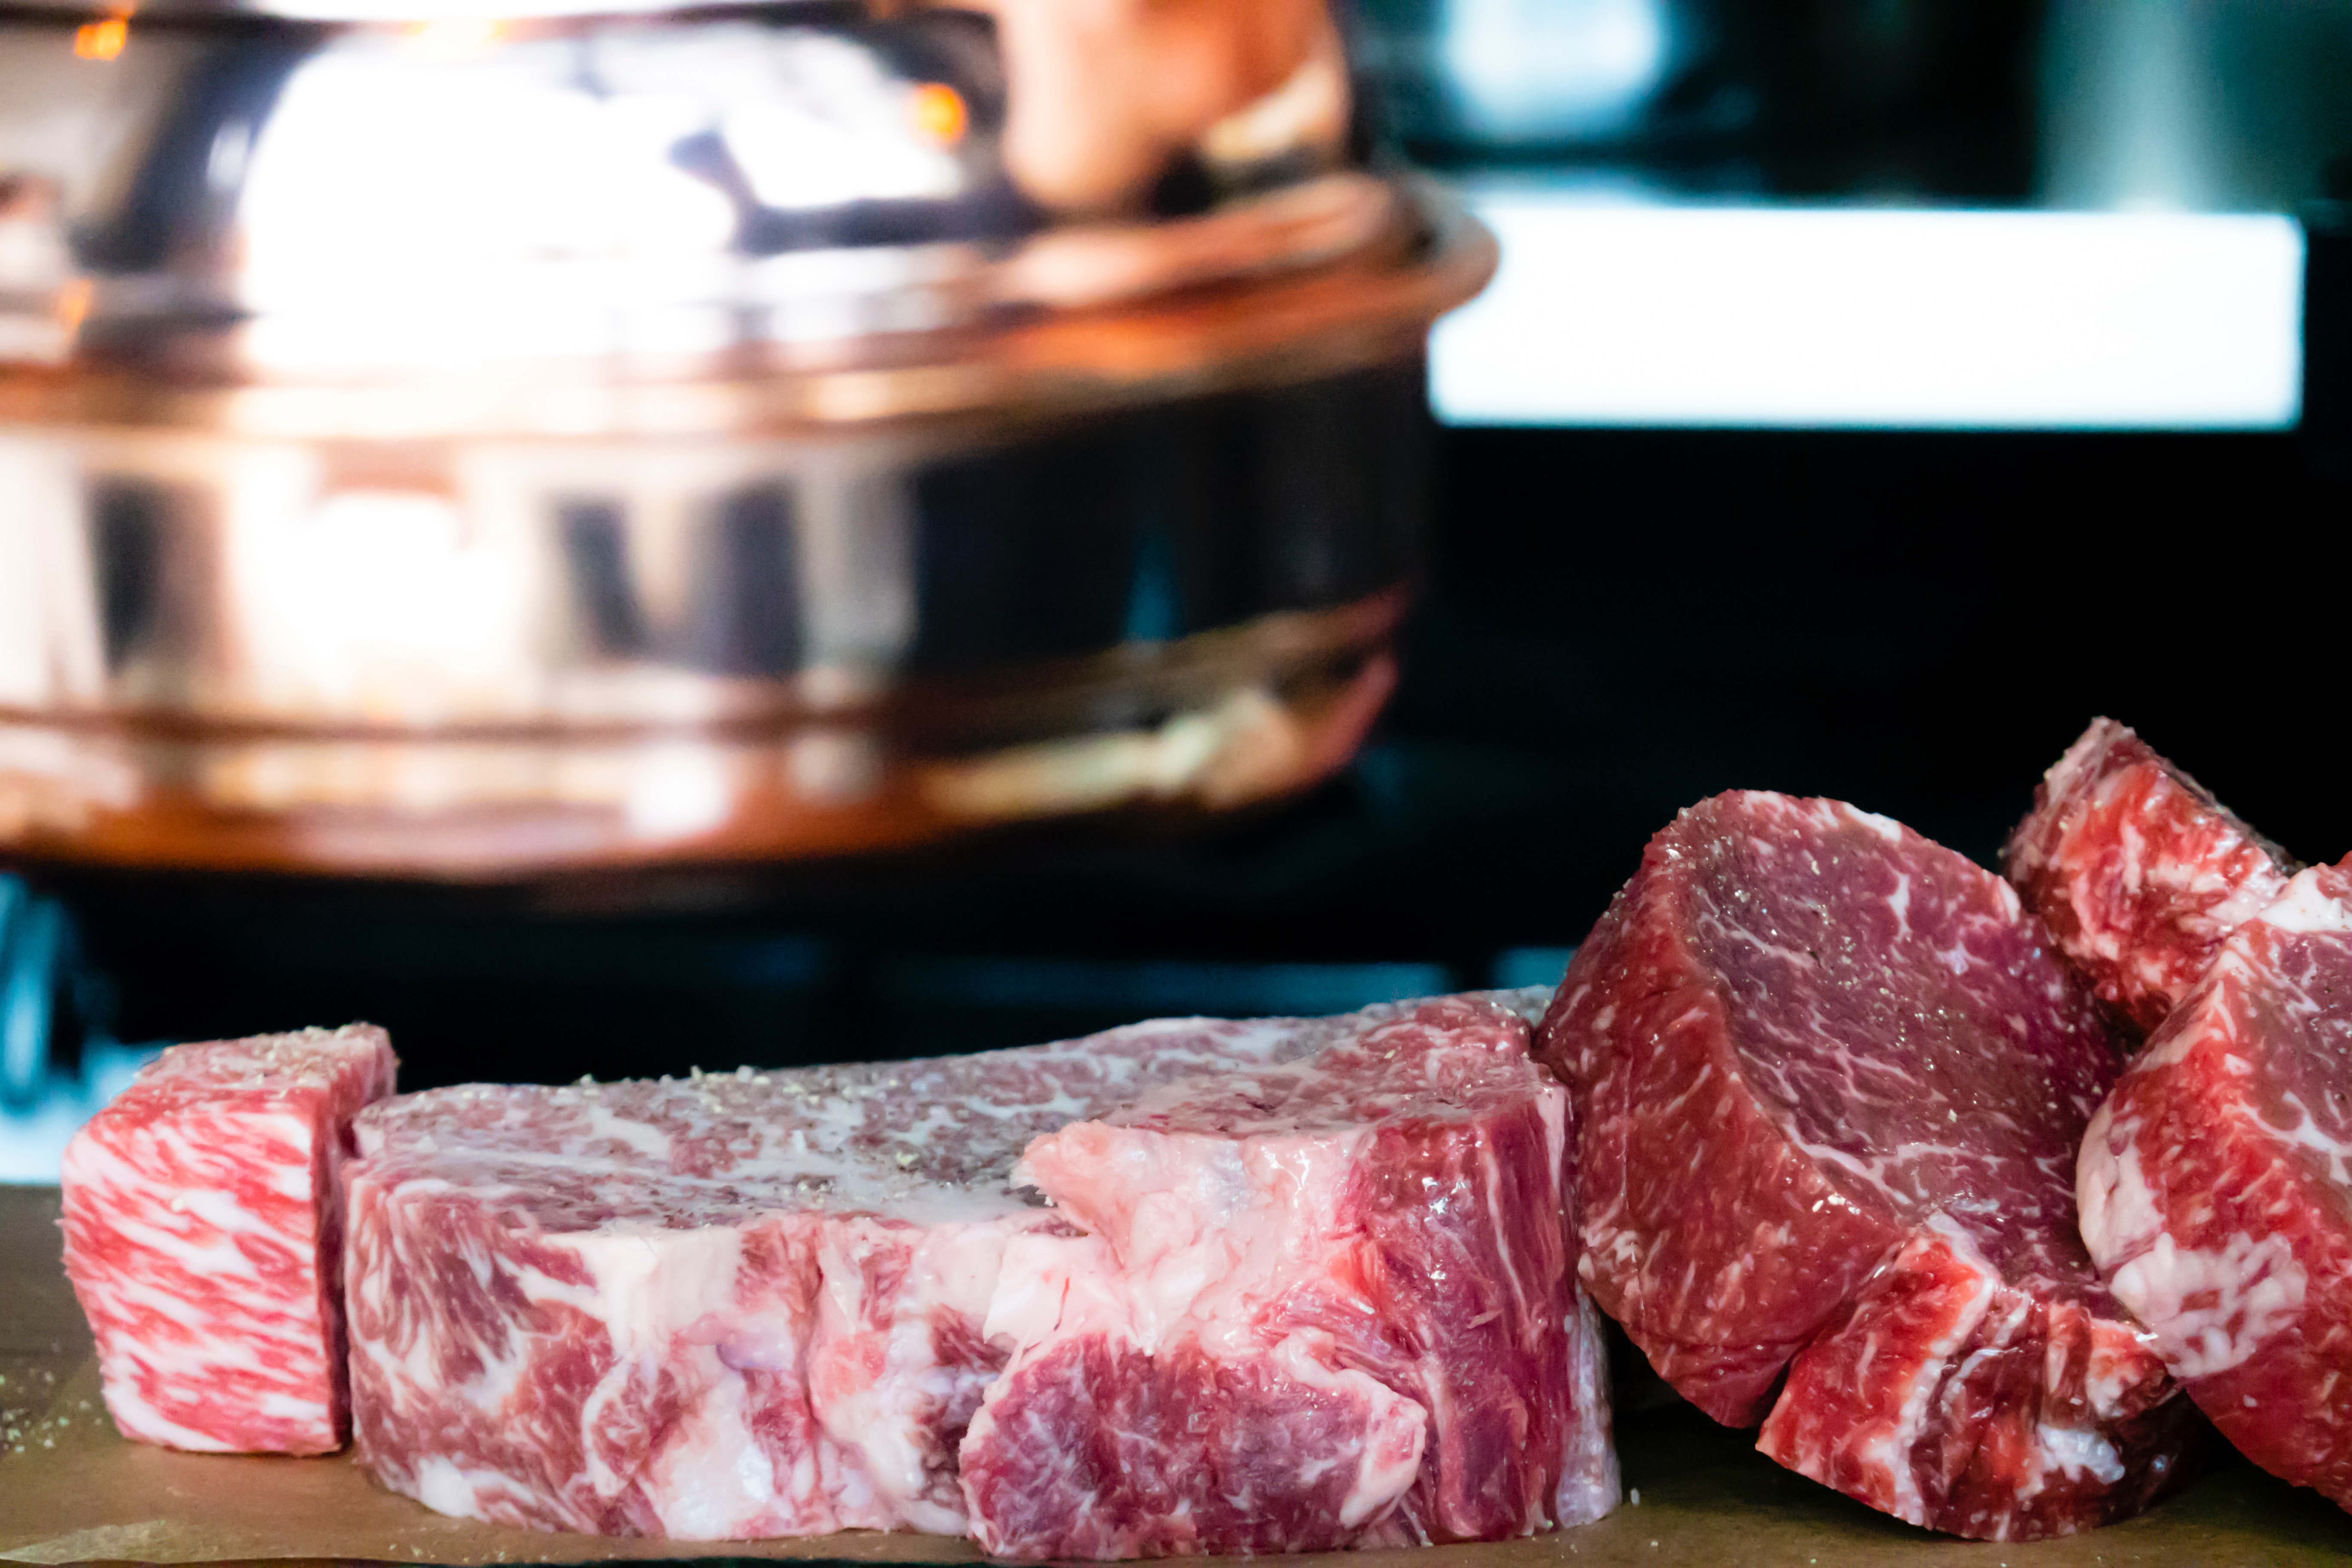 Αύξηση 21,2% για τη μέση τιμή χοιρινού κρέατος στην ΕΕ μέσα σε ένα χρόνο